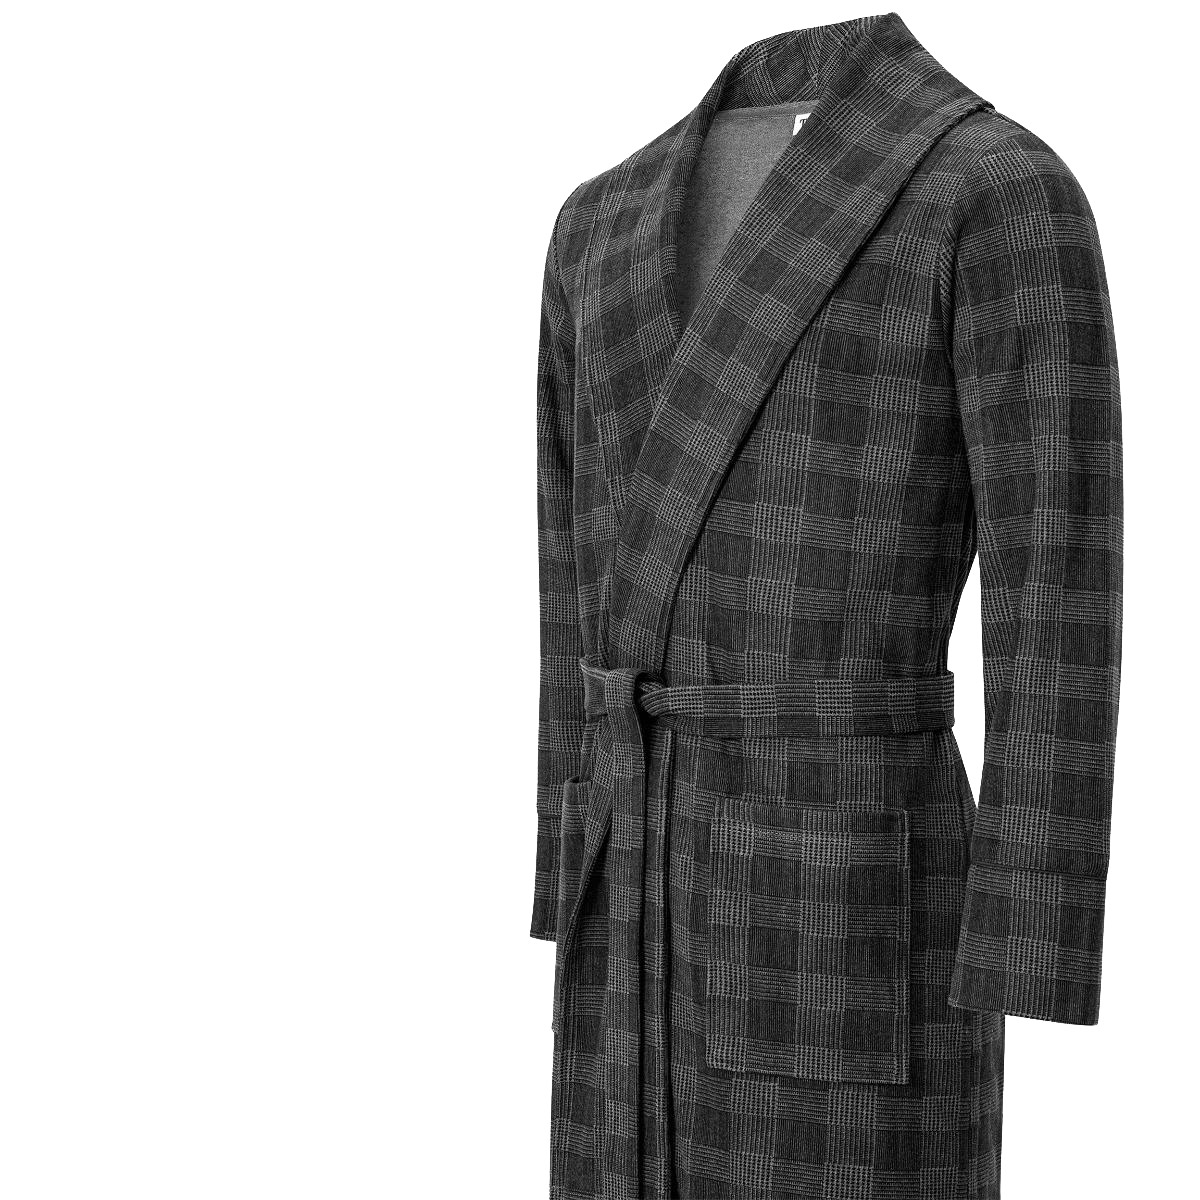 Домашний костюм Togas Рикон серый XXL, цвет тёмно-серый, размер XXL - фото 3